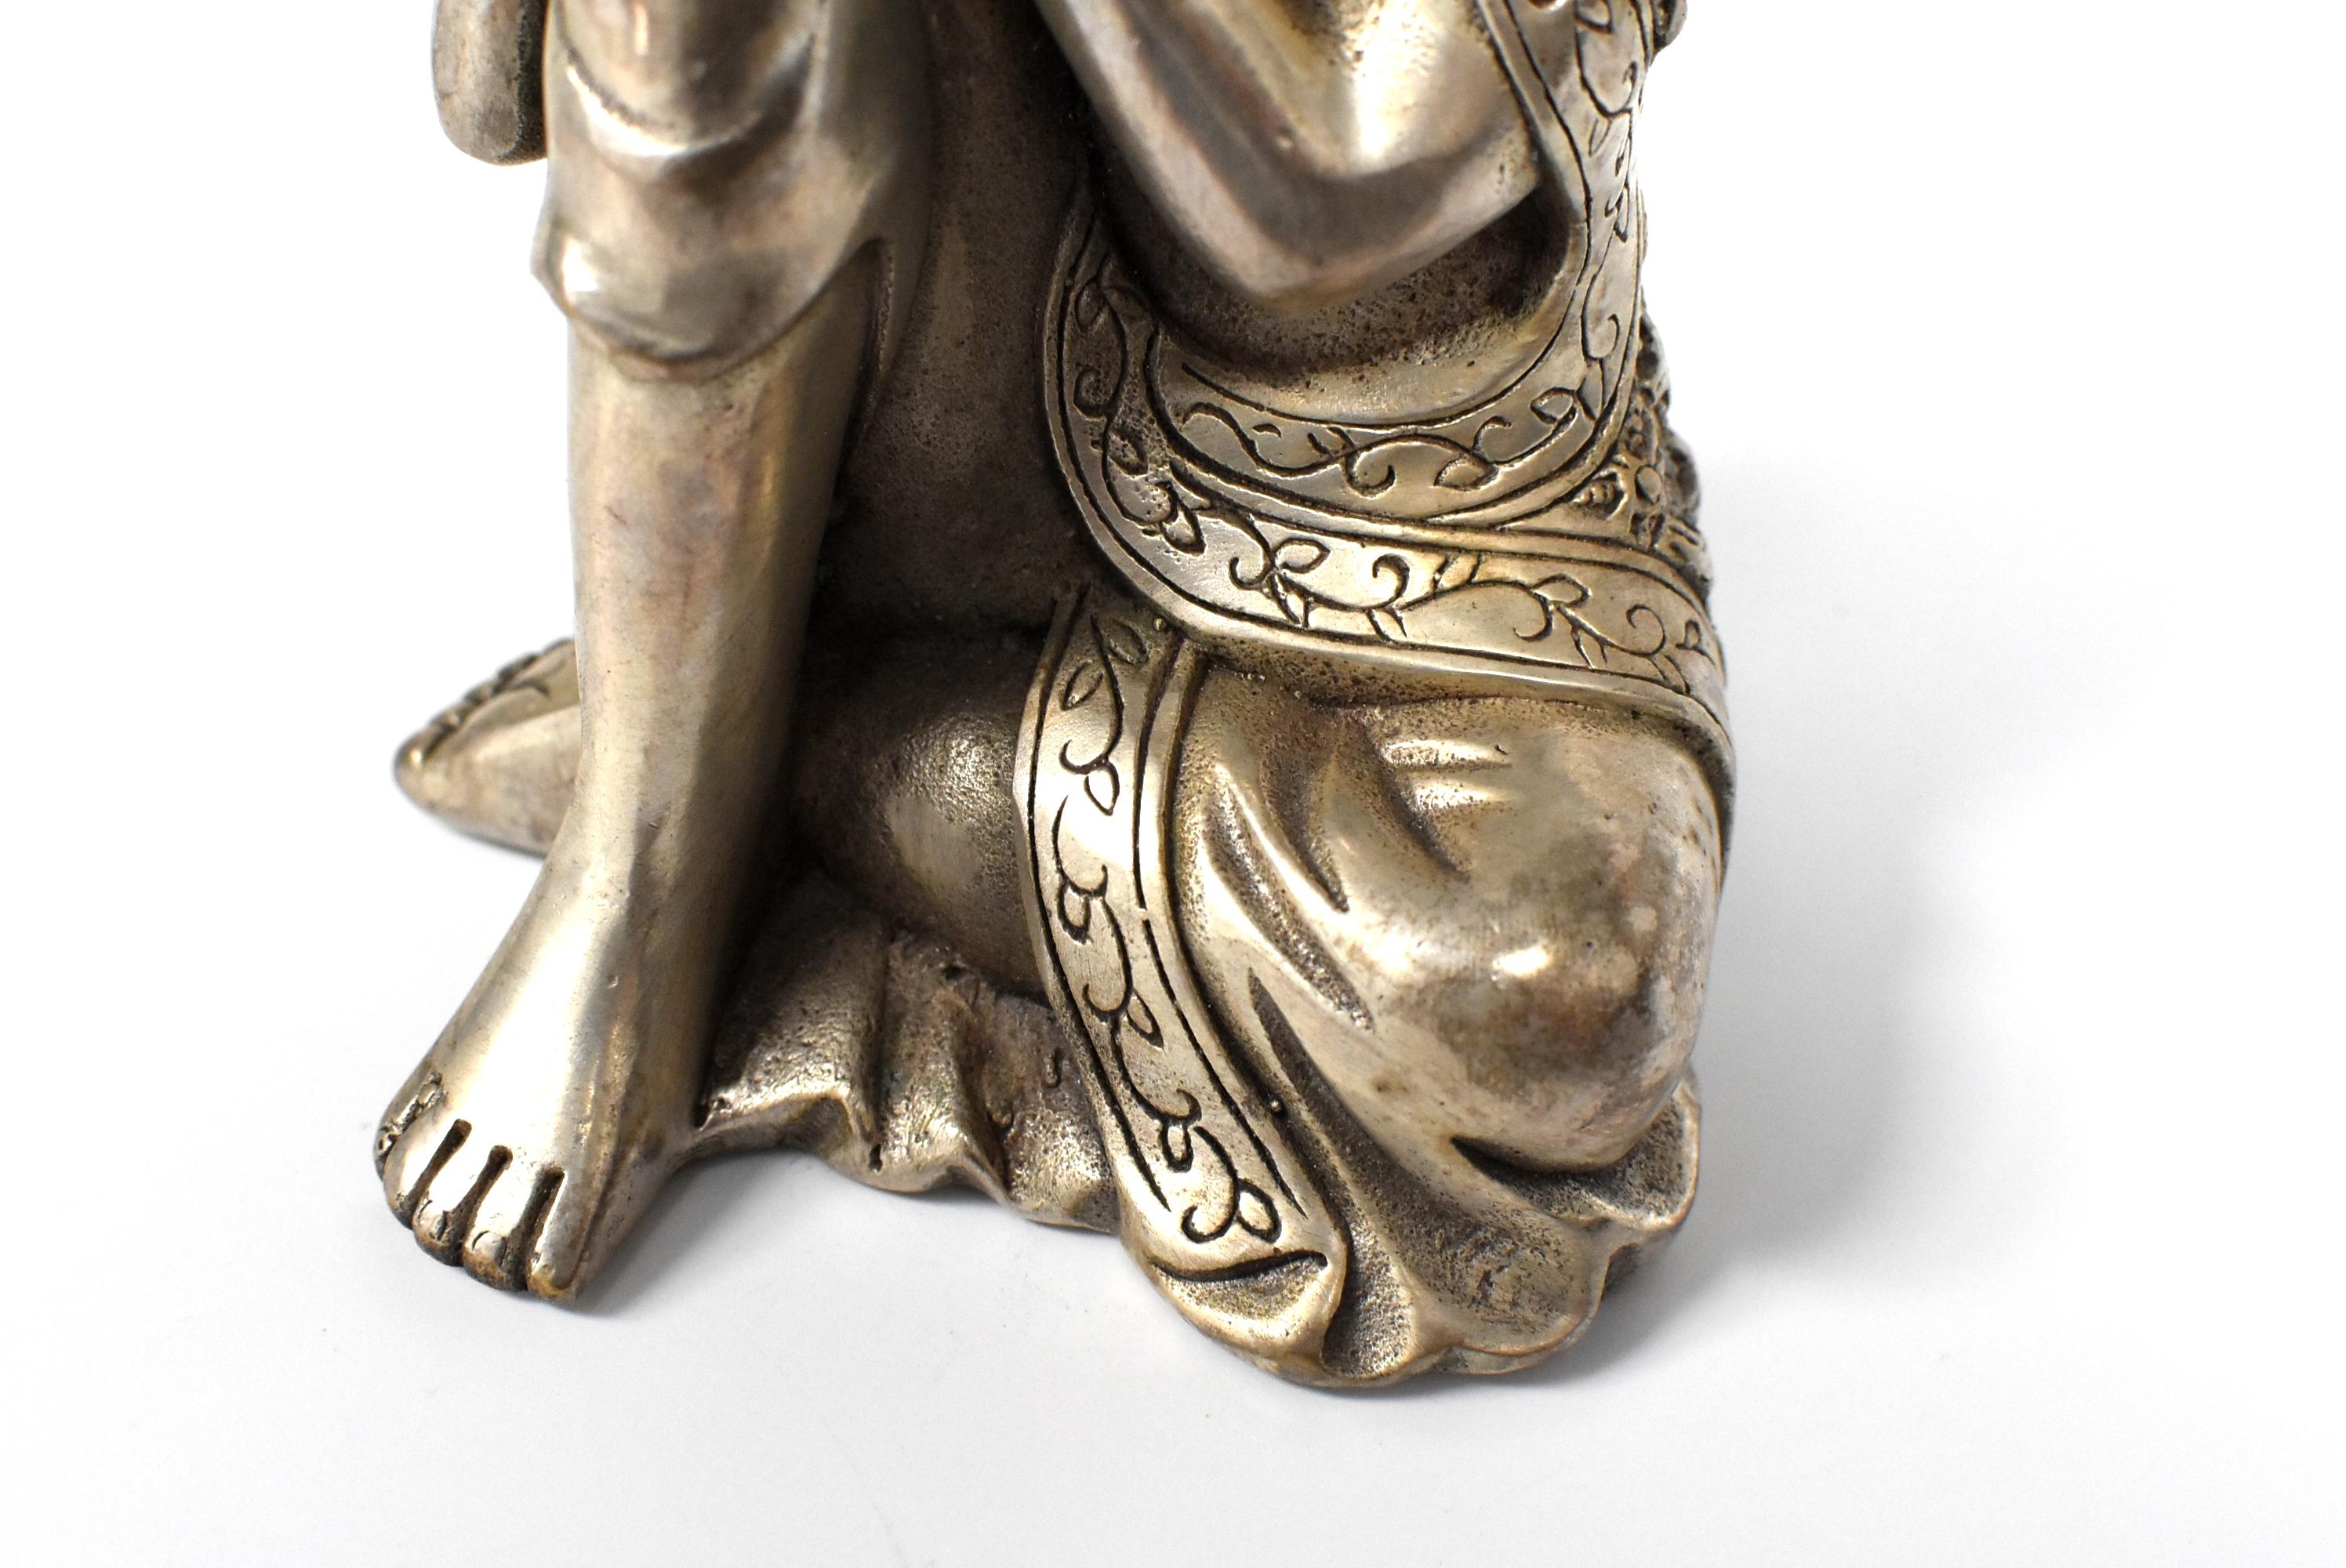 Silvered Brass Buddha Statue, a Thinking Buddha 4